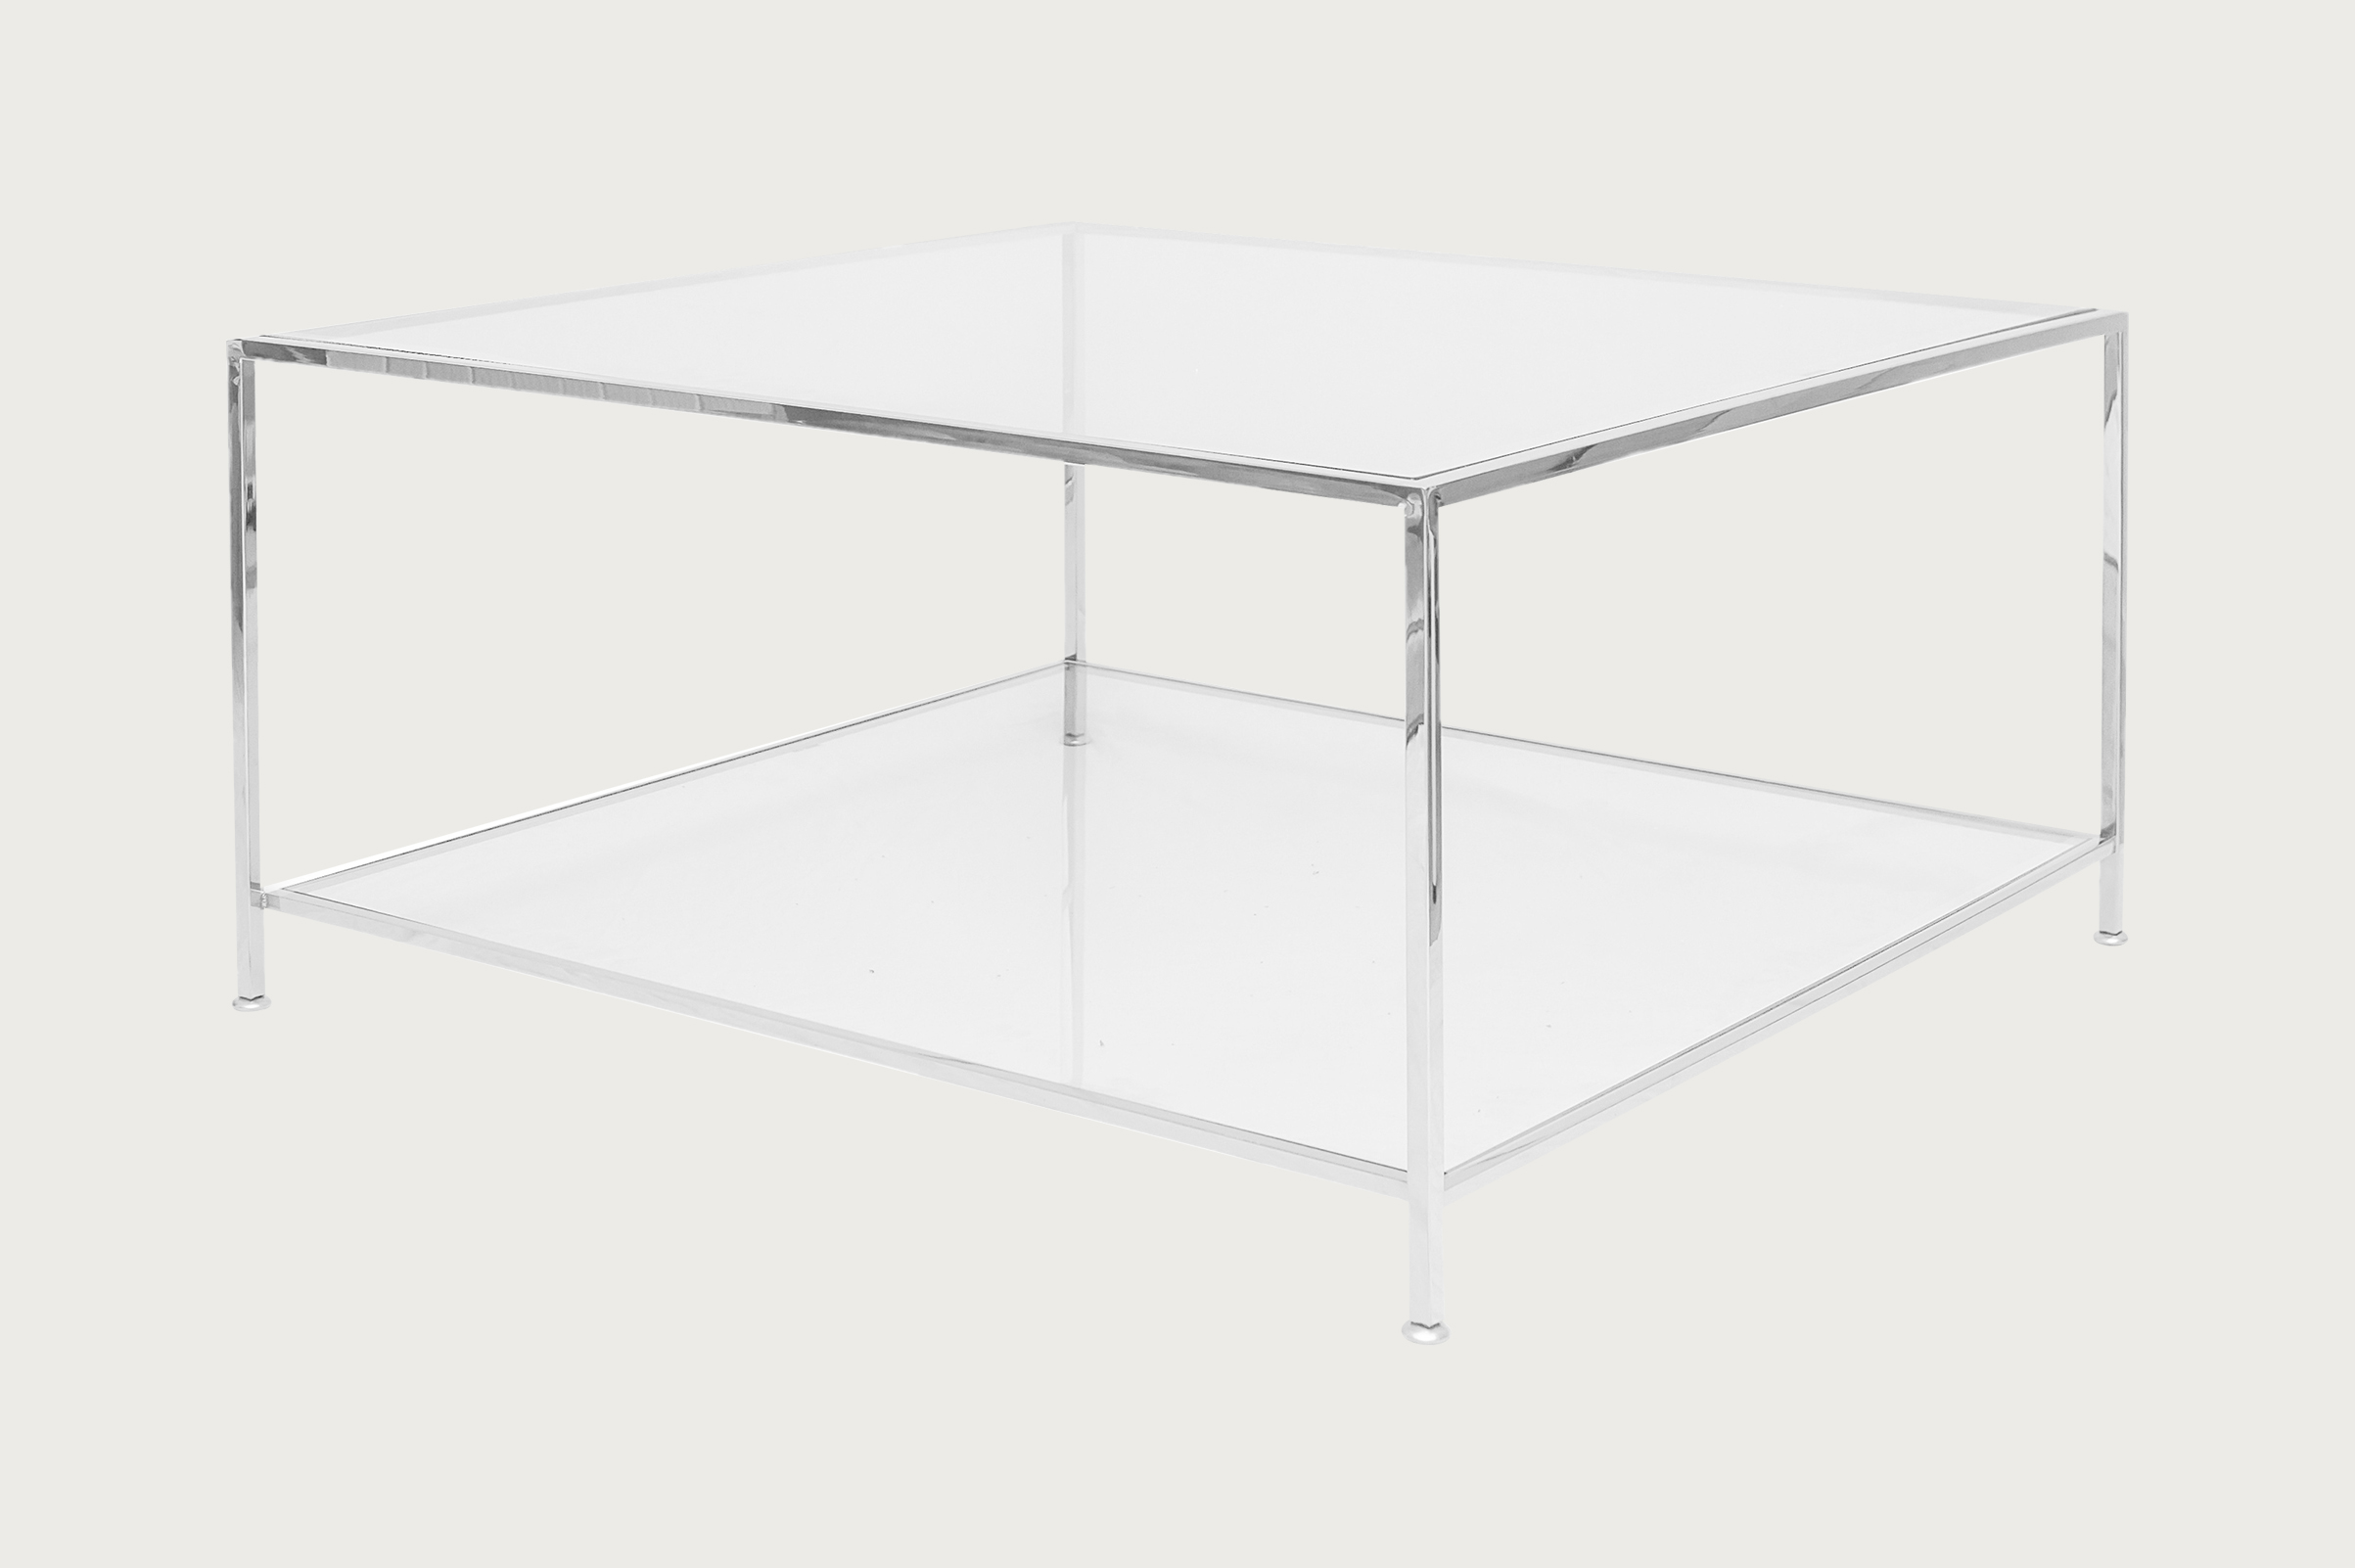 Big Square Table – Chrome